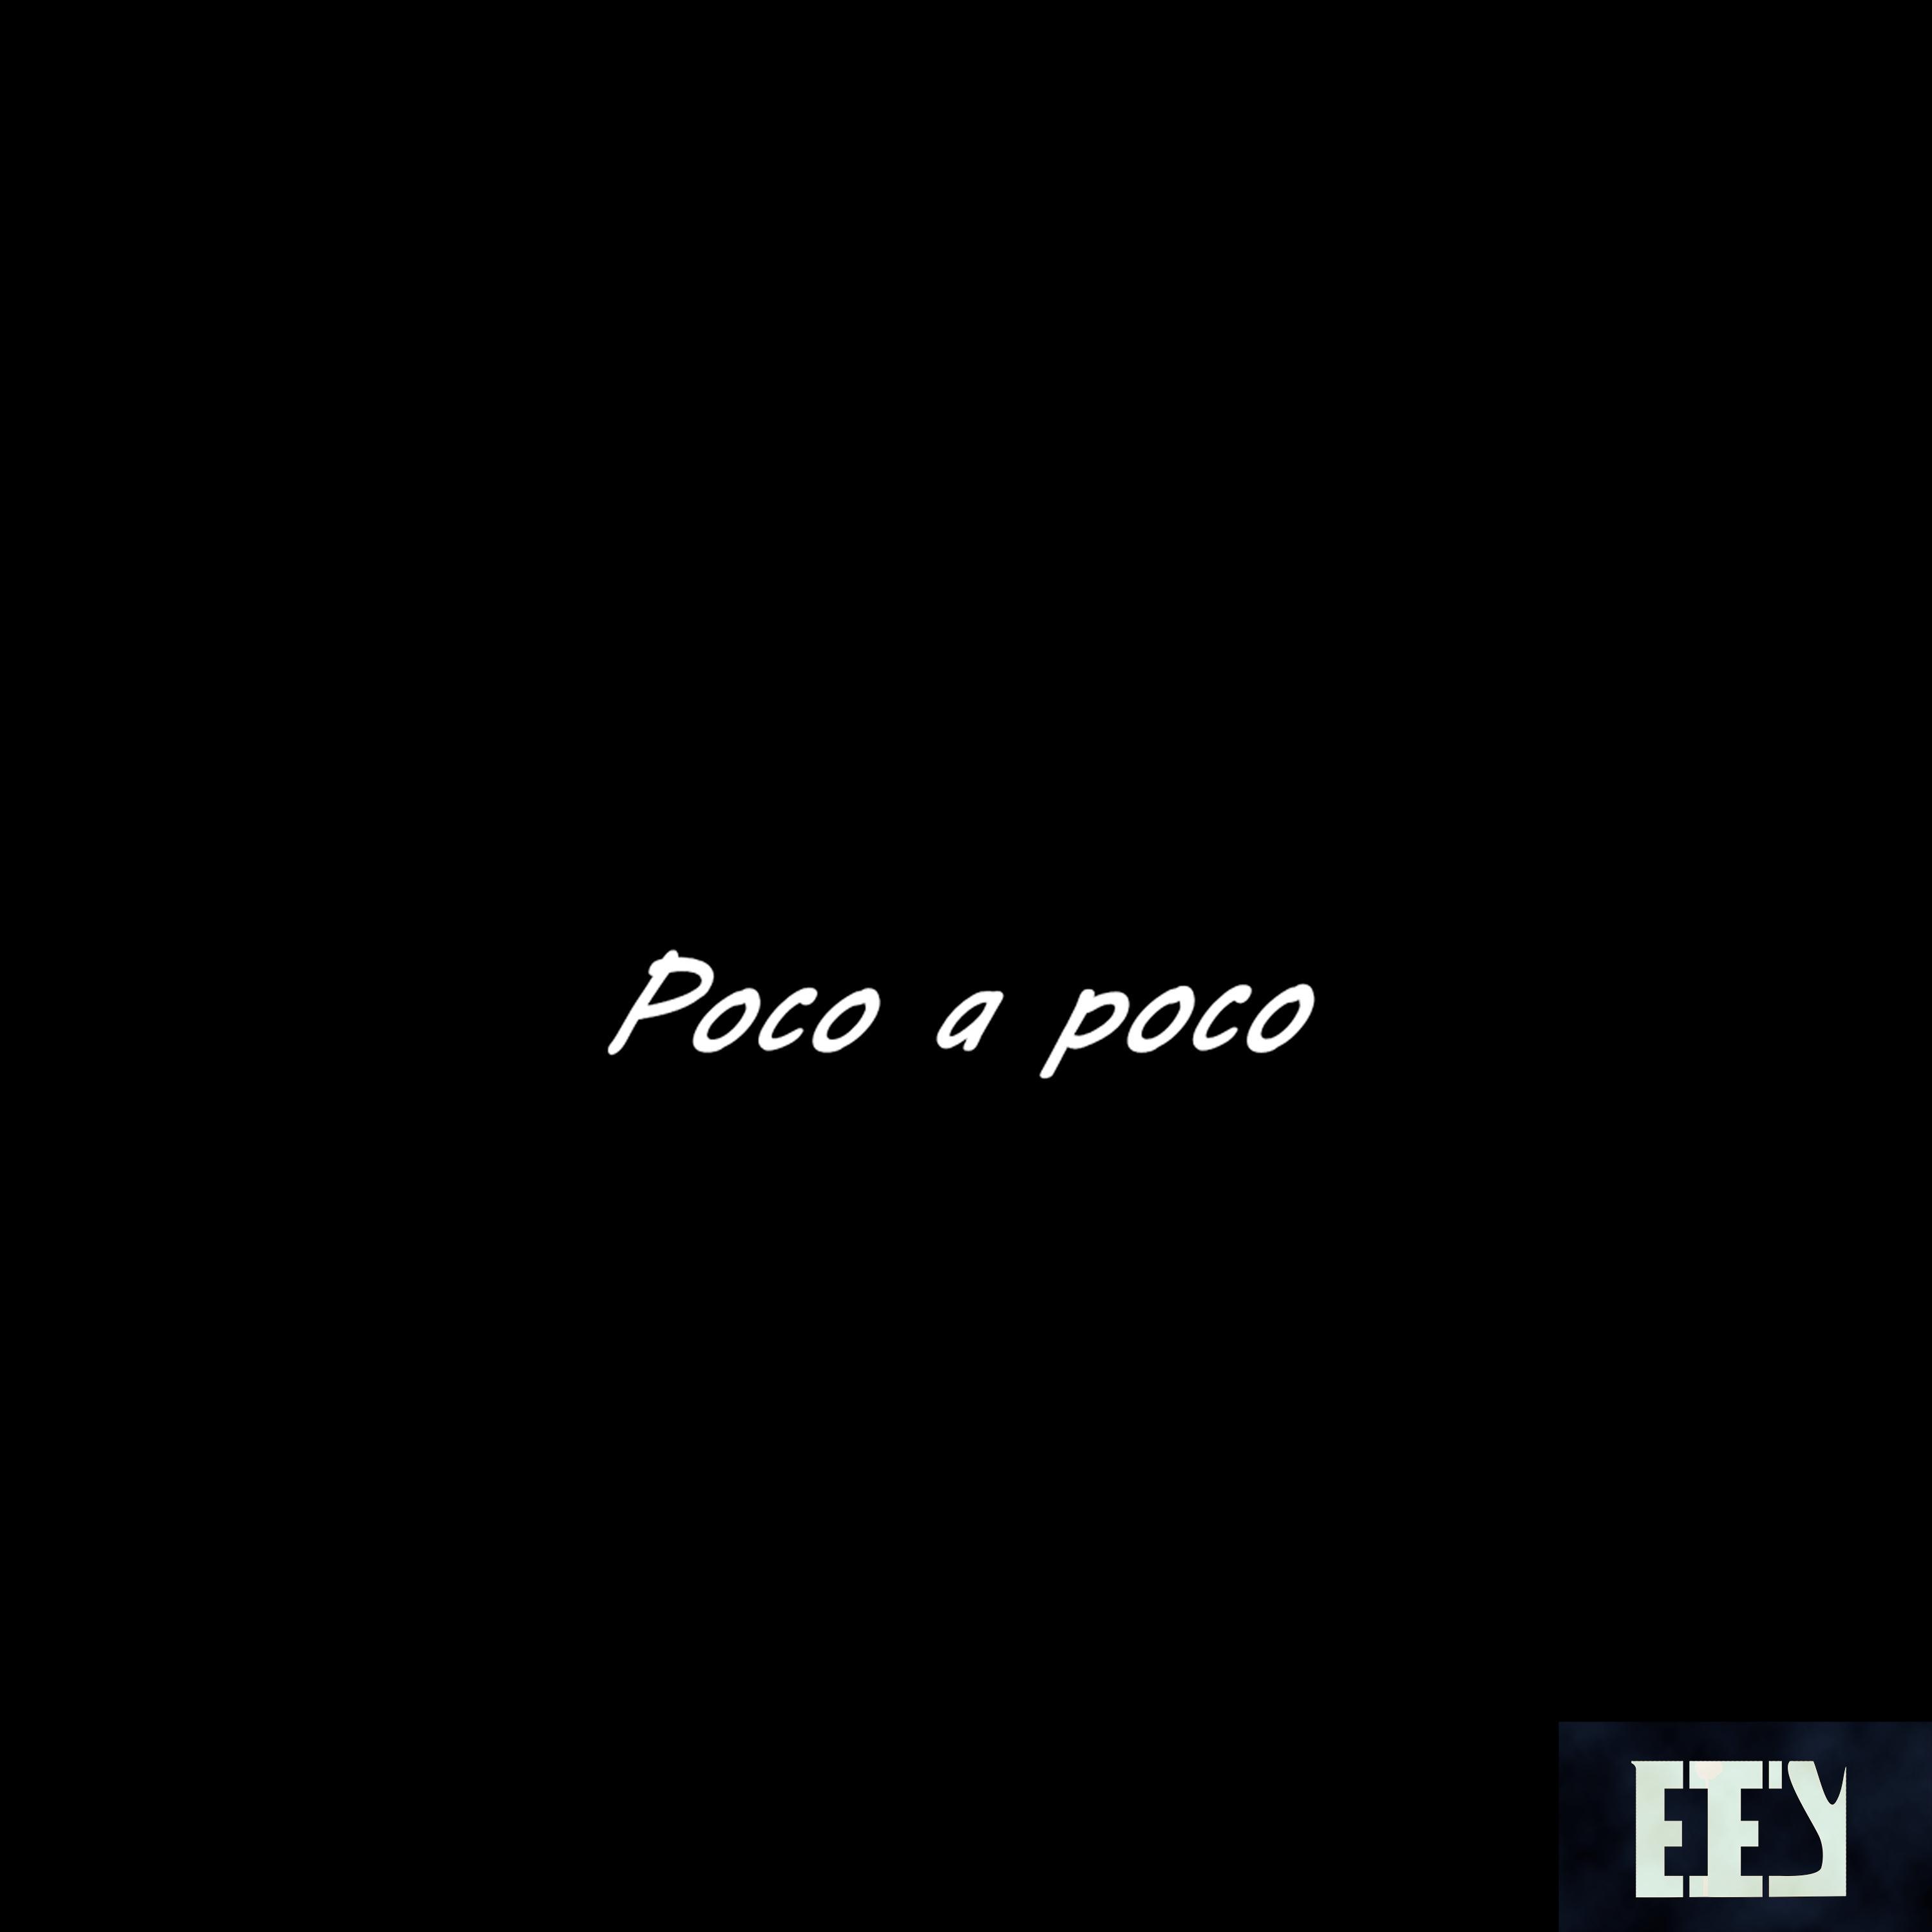 eey_tm - Poco a Poco